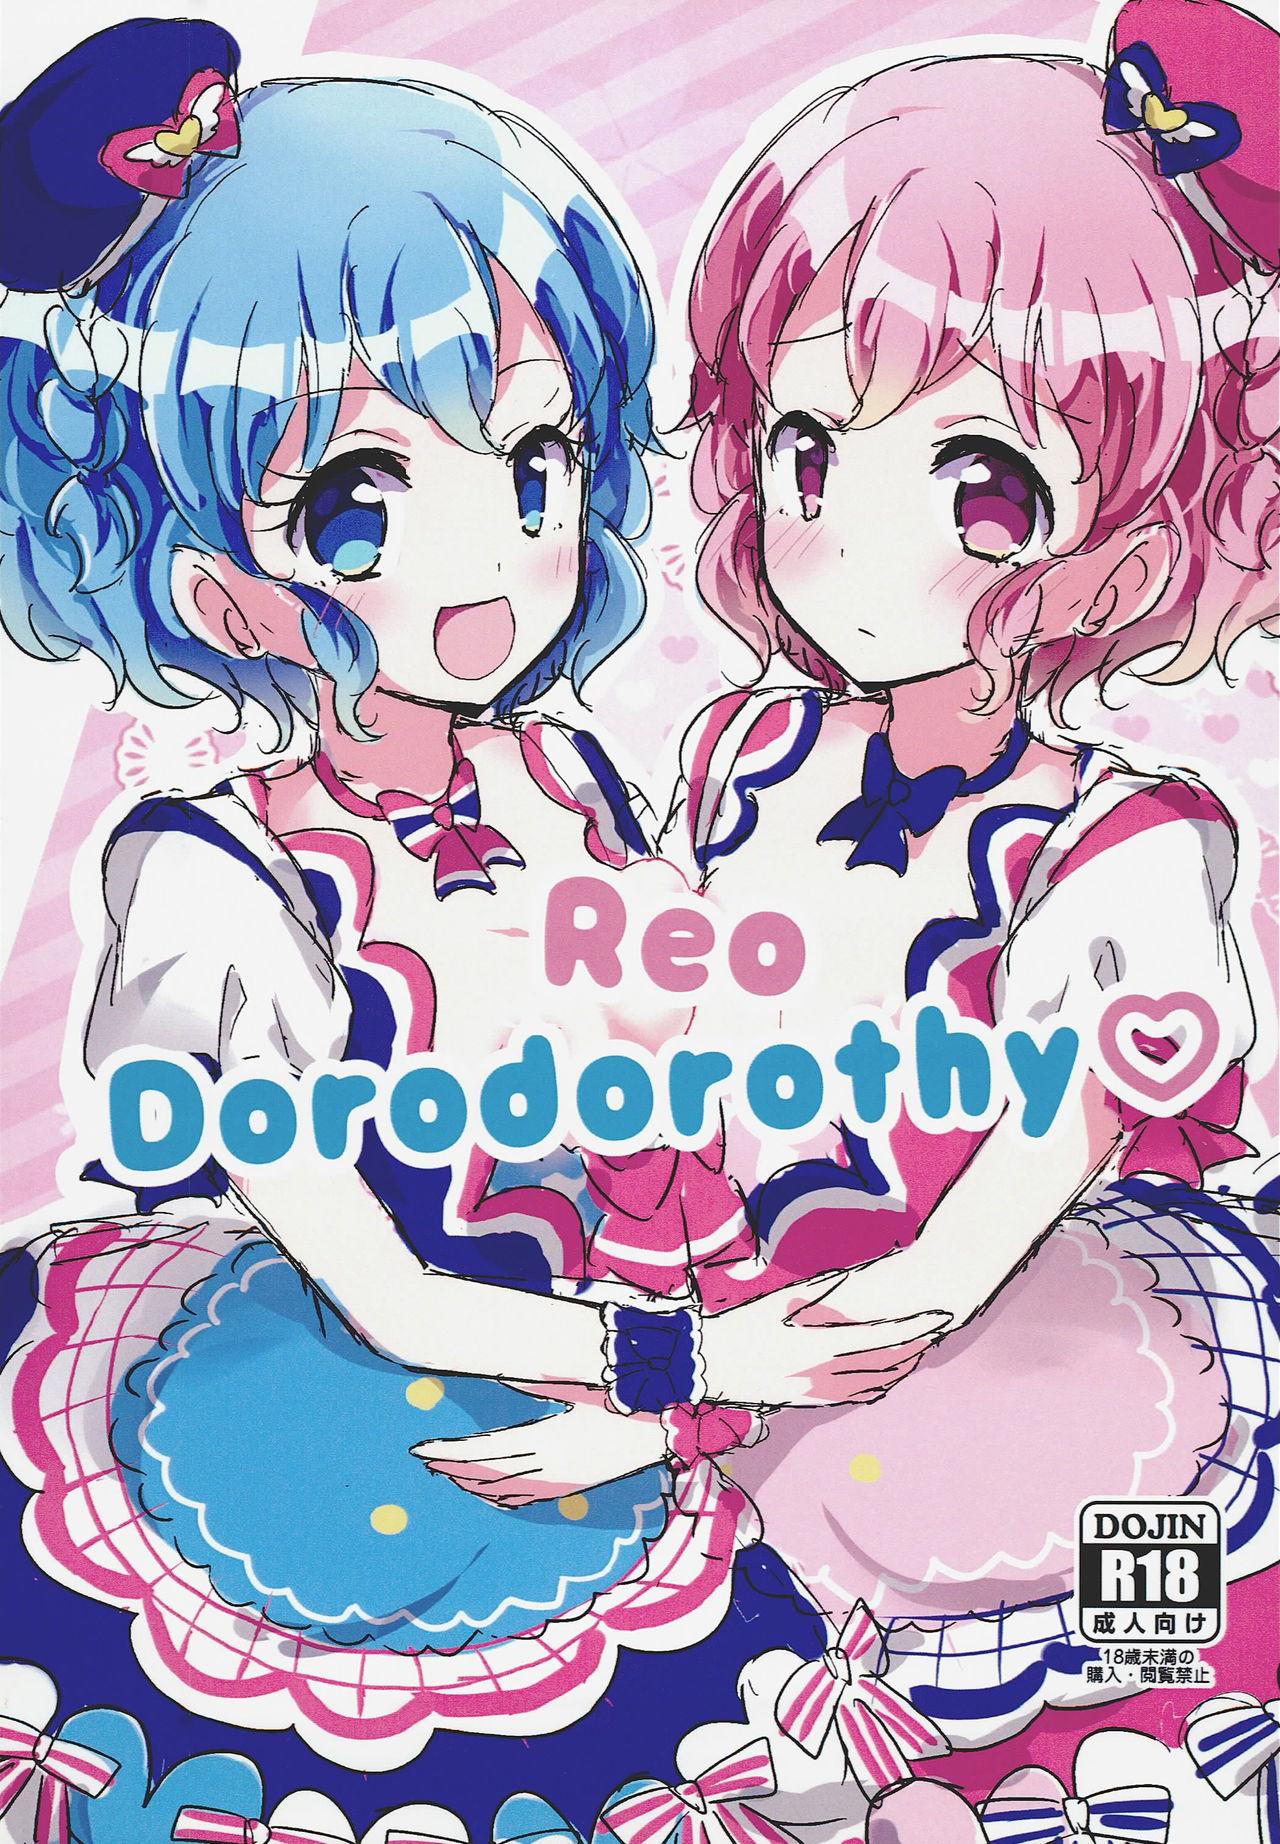 Reo Dorodorothy 1